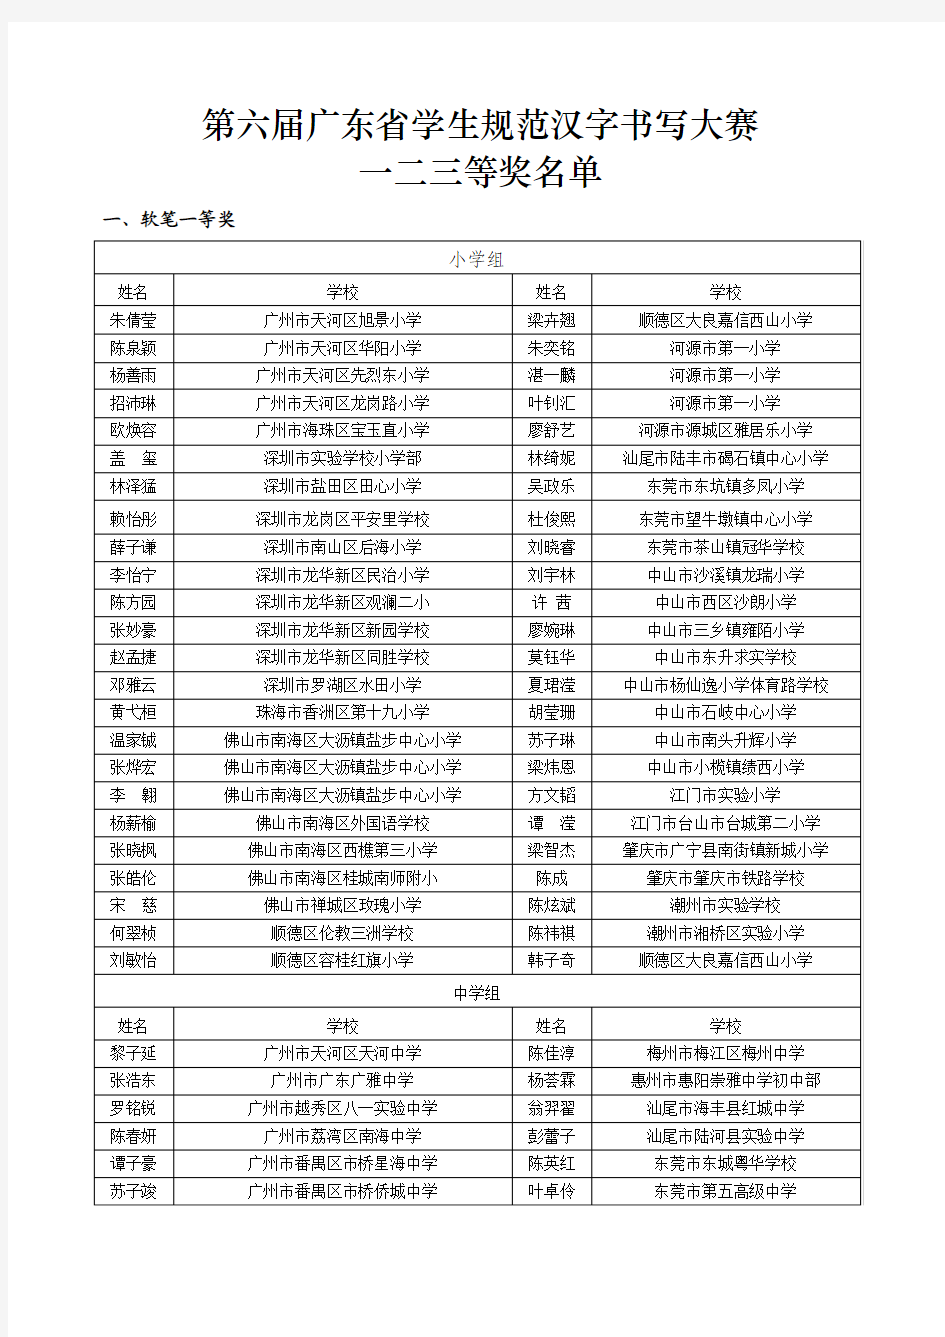 第六届广东省学生规范汉字书写大赛获奖名单